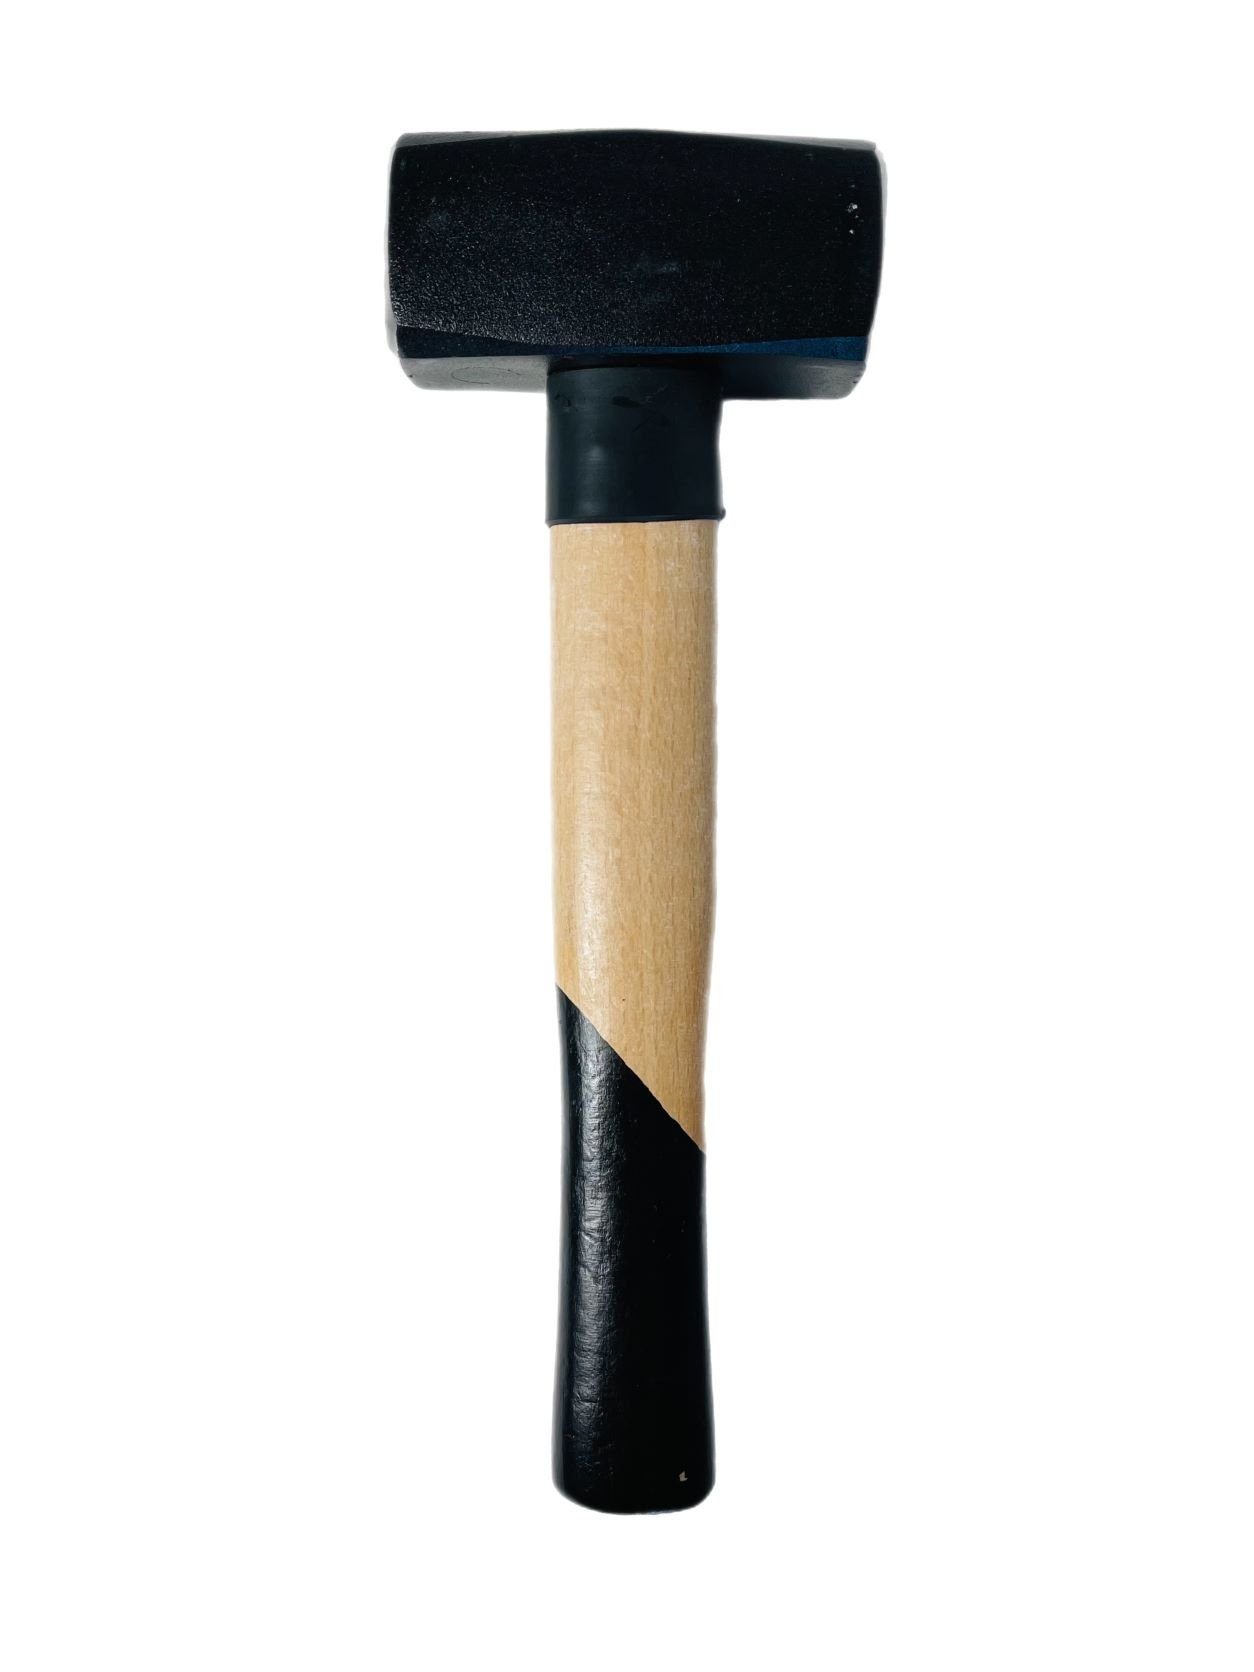 1500g Fäustelhammer Hammer VaGo-Tools Schlosserhammer Hammer